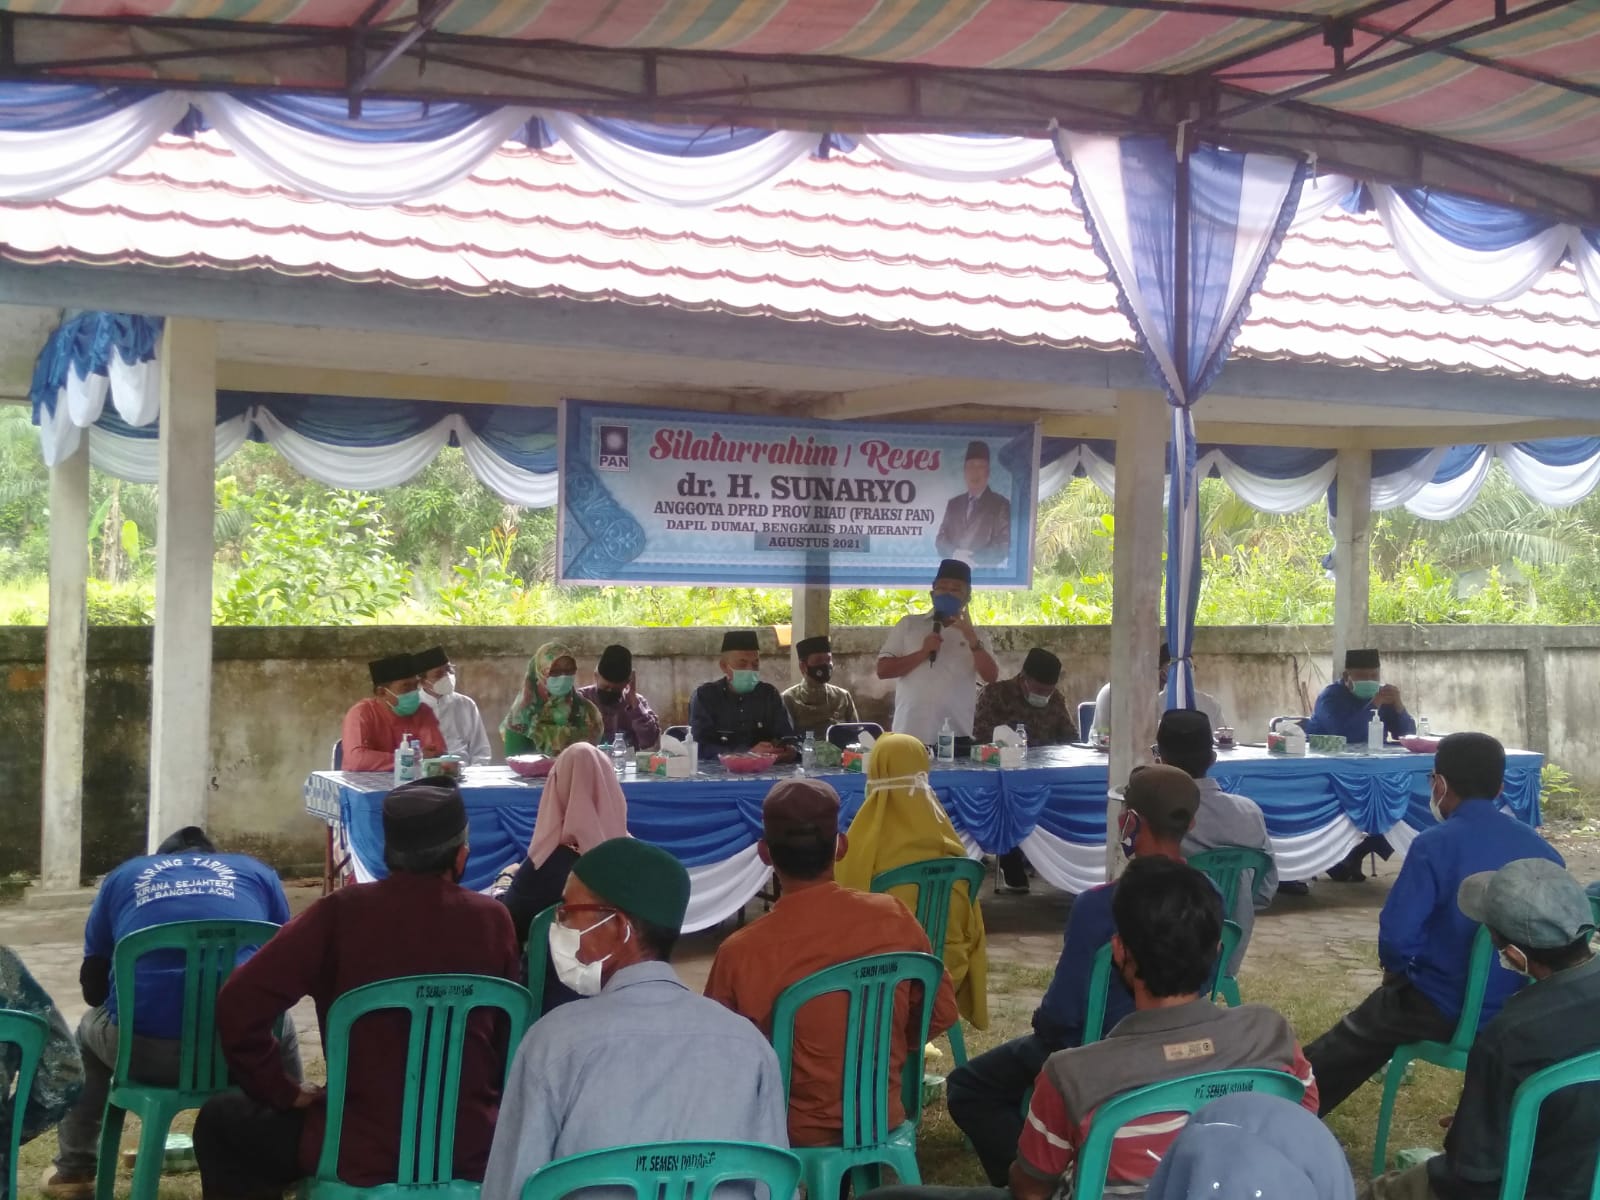 Anggota DPRD Riau, H.Sunaryo Reses di Bangsal Aceh